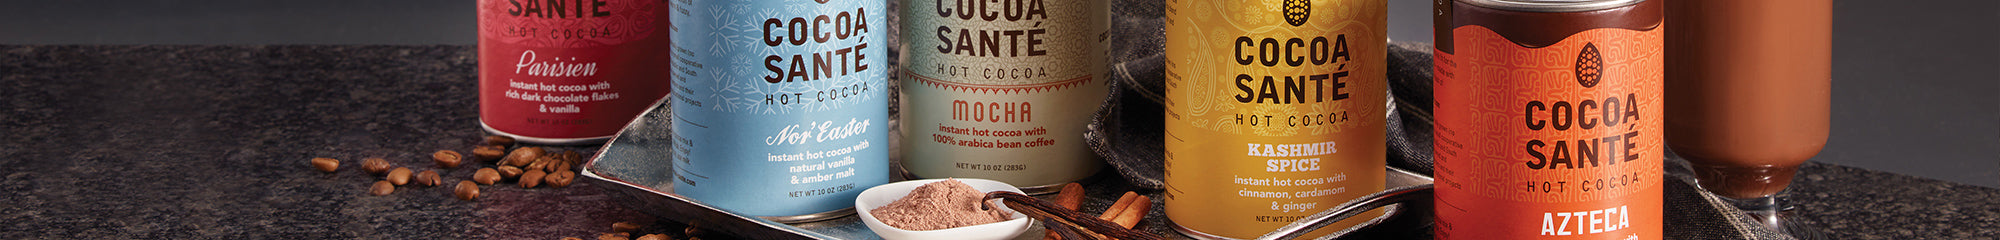 Santé Organic Cocoa | Sweets Hot | Harbor Cocoa Gourmet